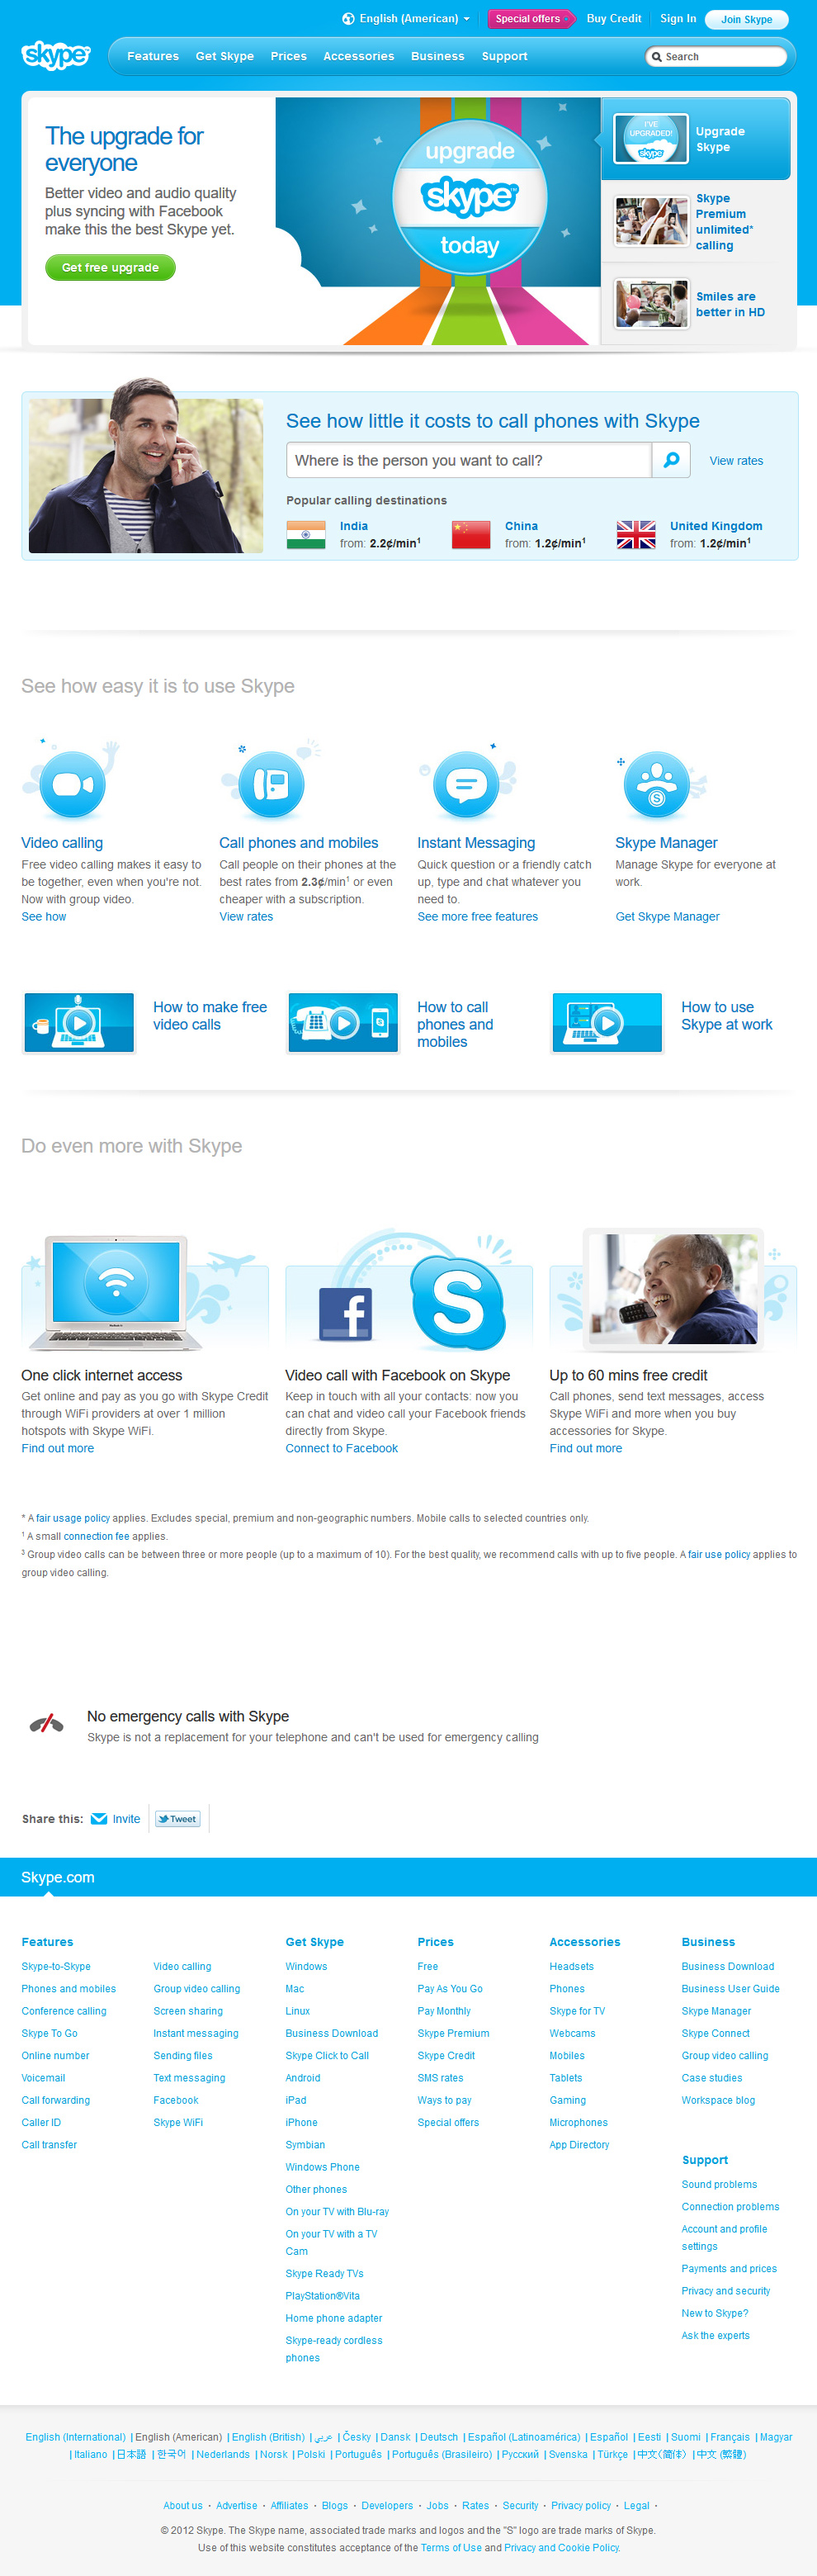 Skype website in 2012